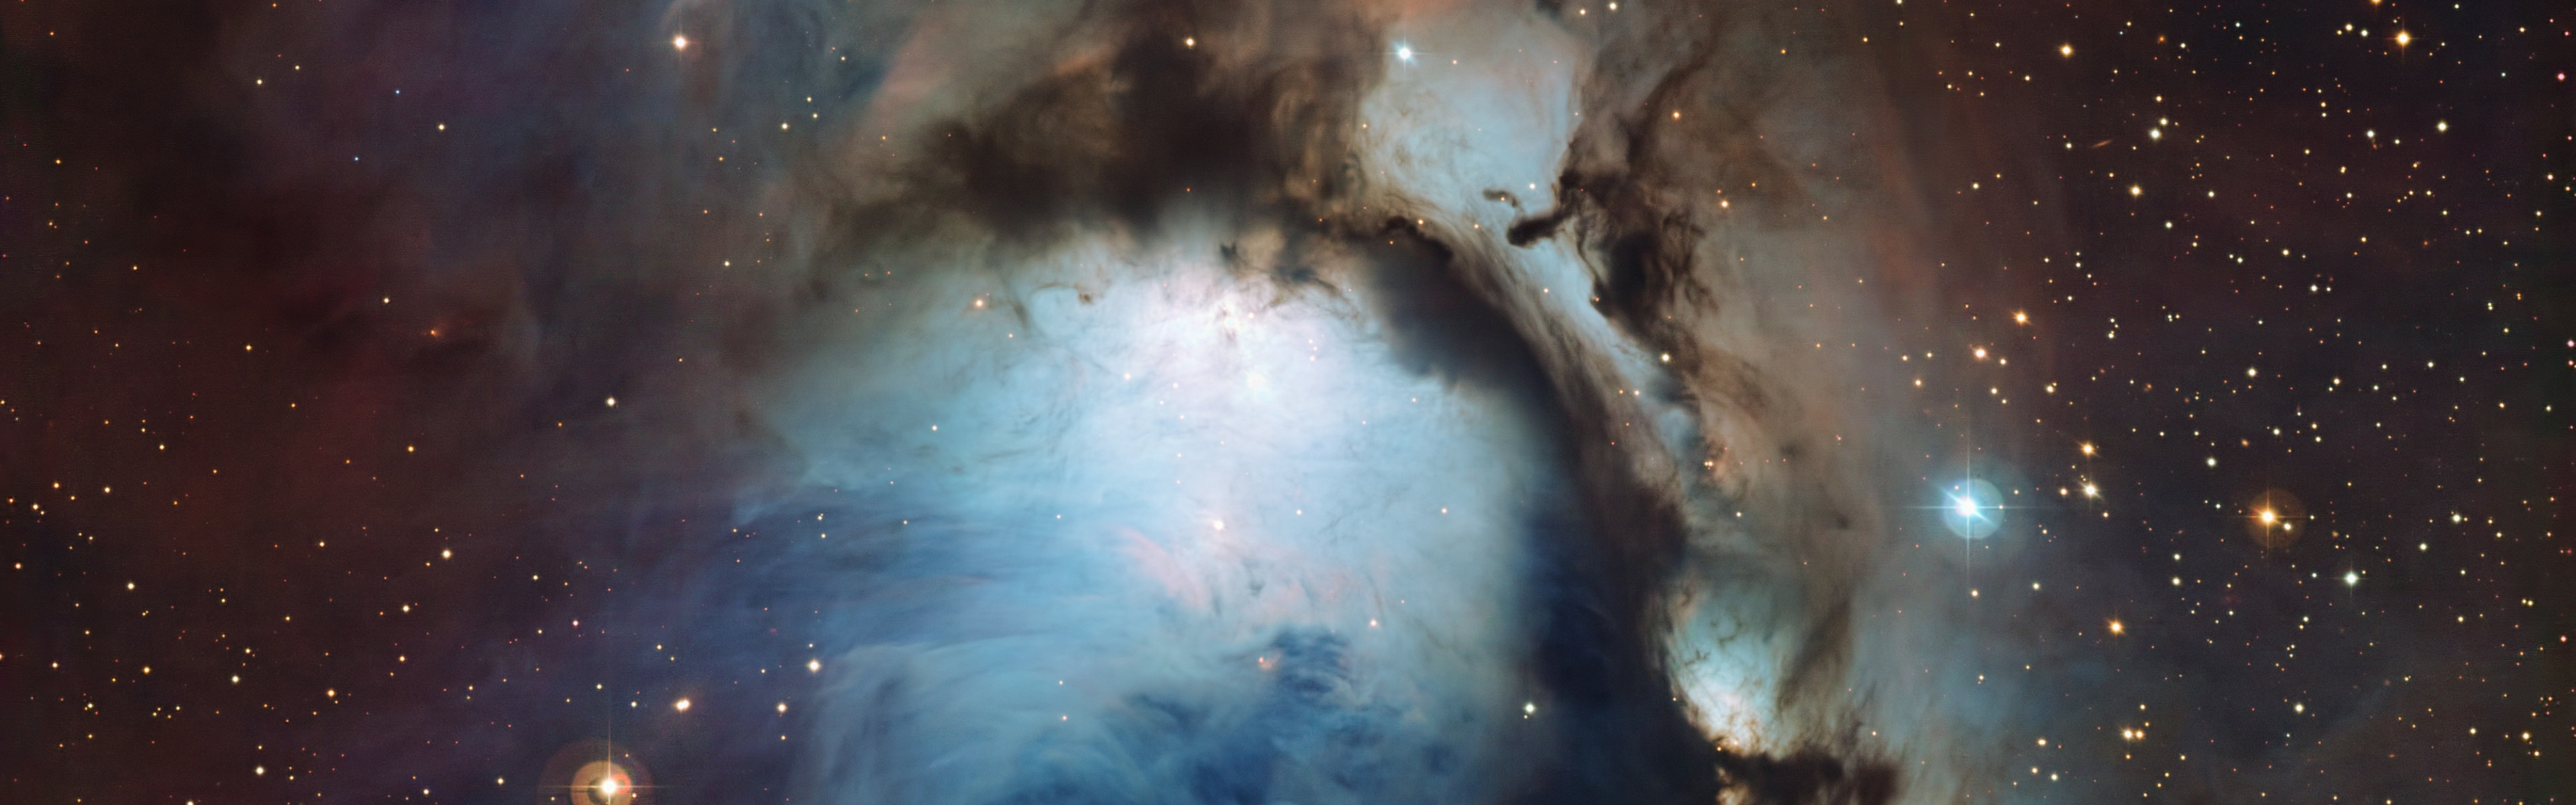 3840x1200 wallpaper.wiki-Blue-Hole-Nebula-Panoramic-Wallpaper-PIC-